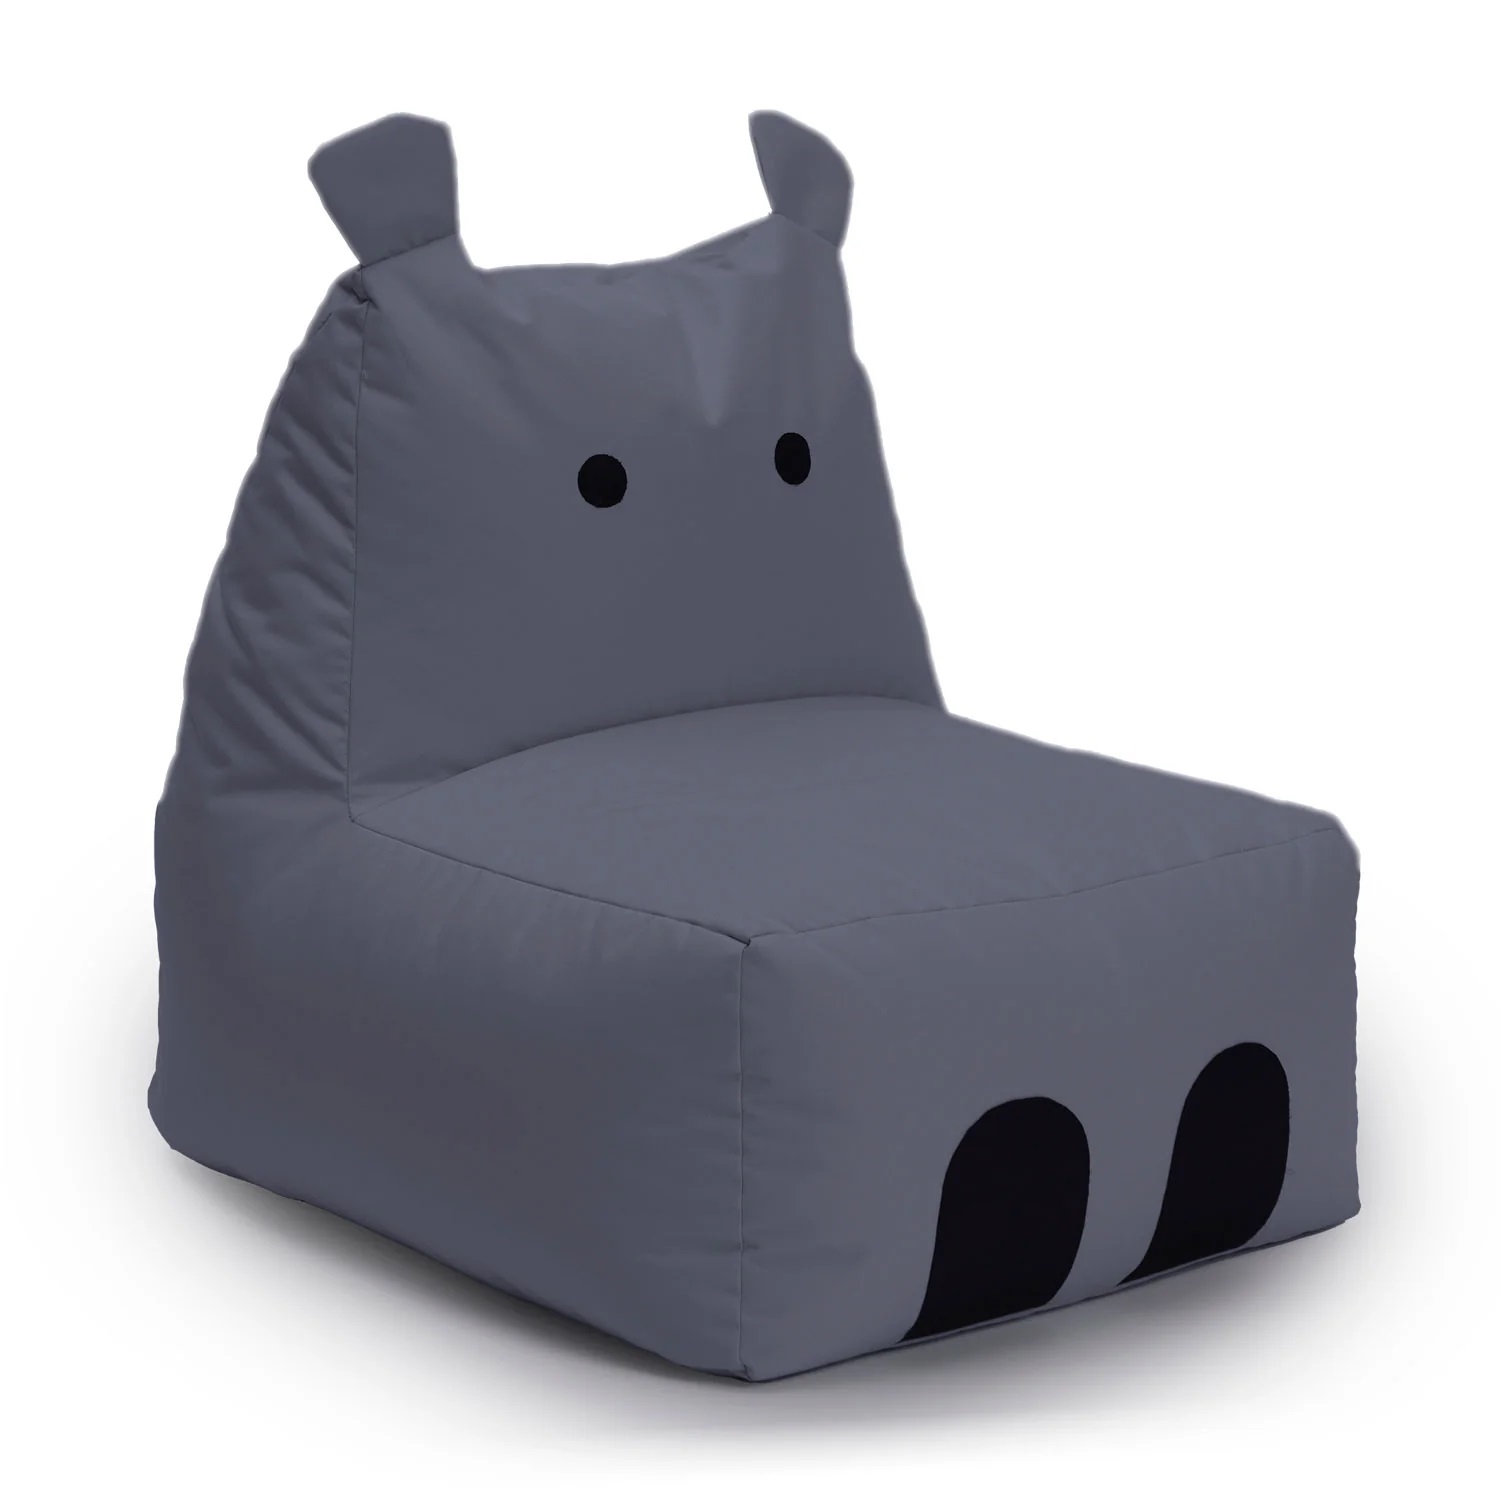 Hippo Kids Bean Bag Chair Cover